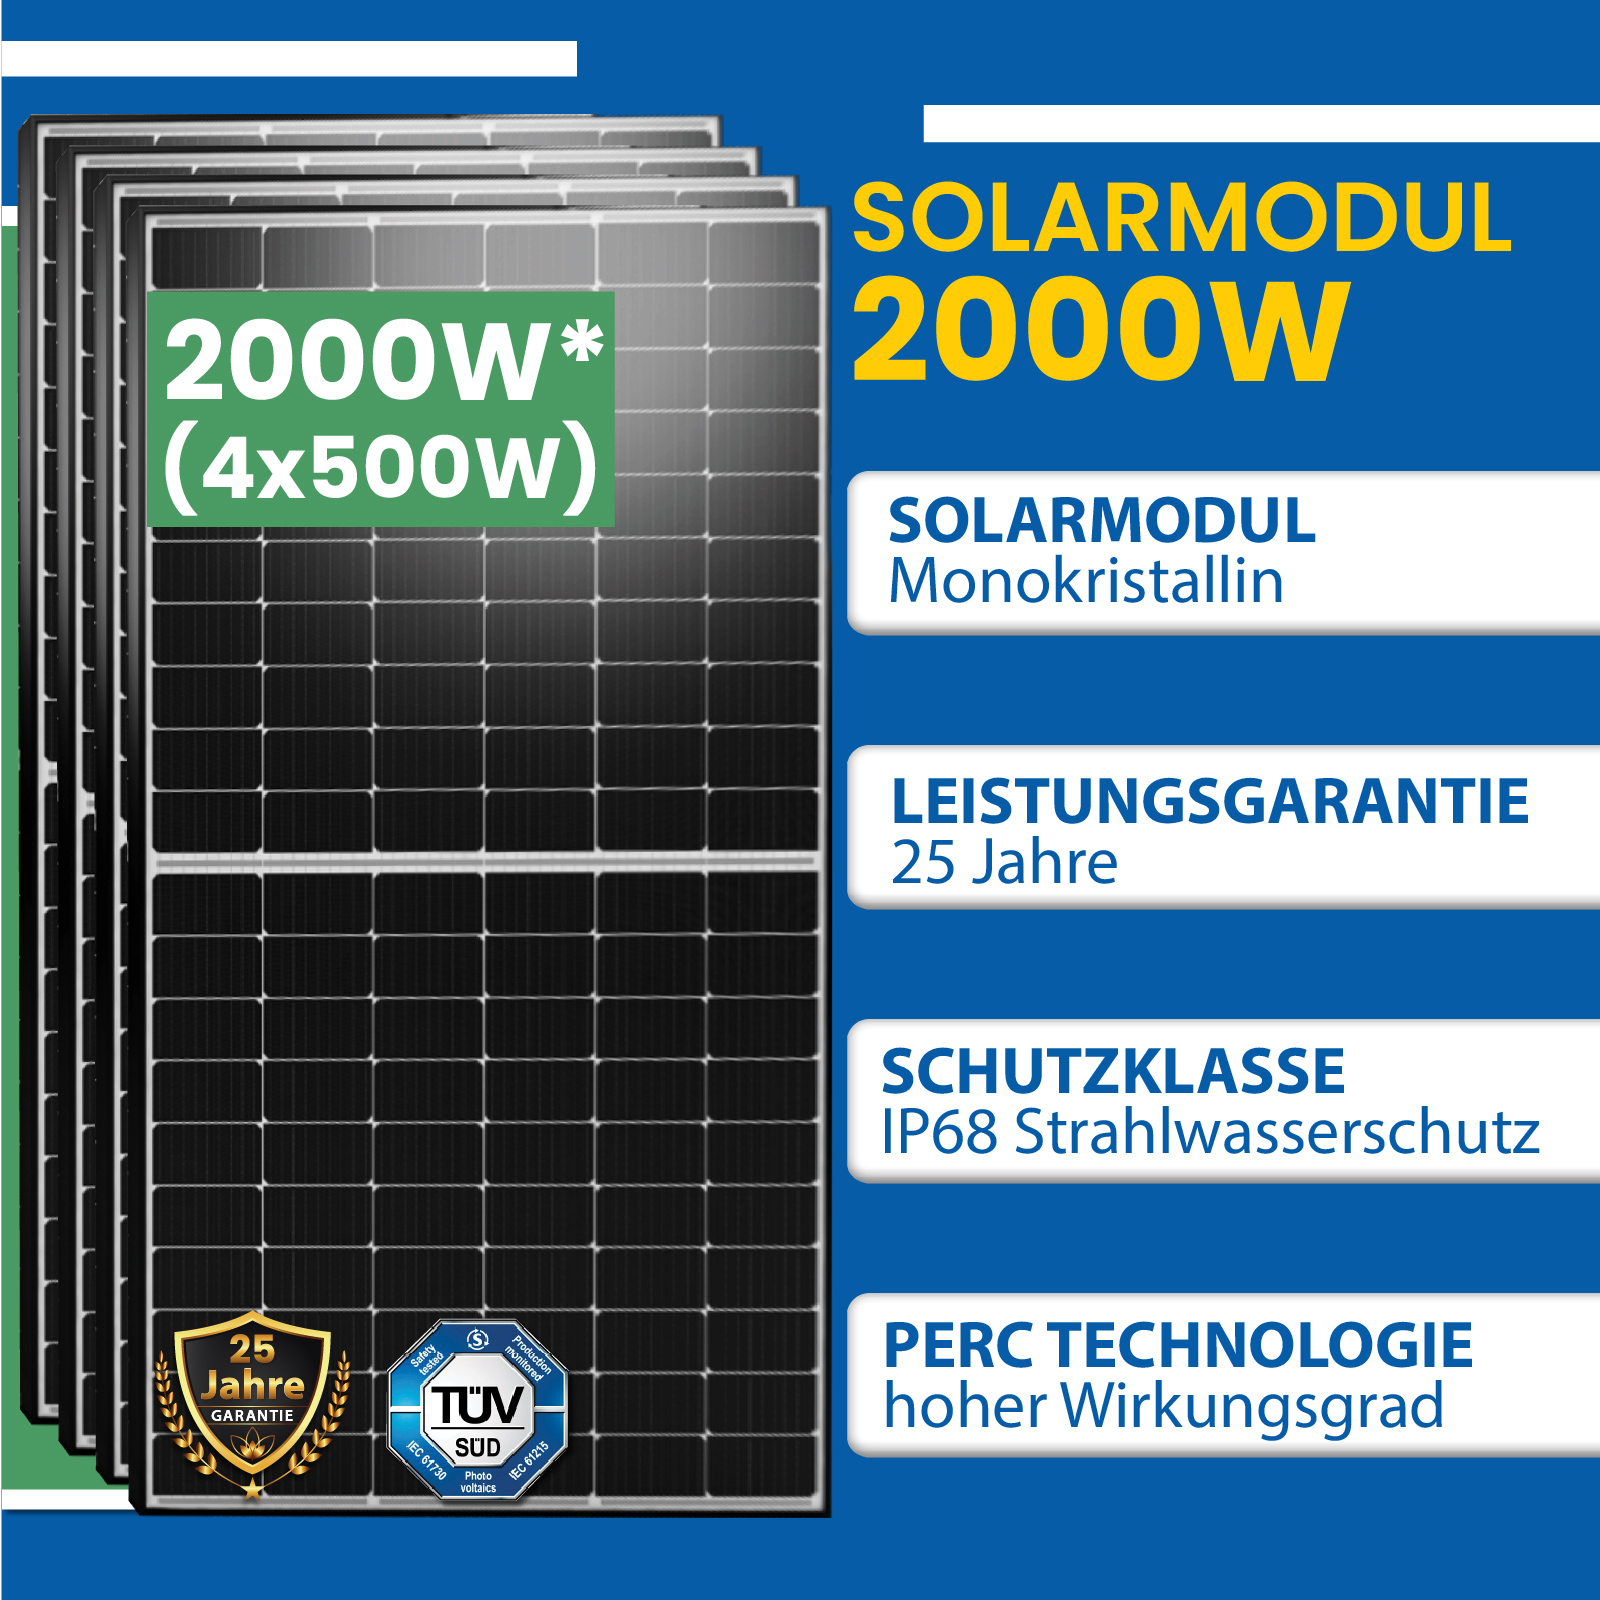 2000W Photovoltaik Balkonkraftwerk mit EPP 500W Solarmodule, Hoymiles HMS -1600-4T Wechselrichter und DTU-WLite-S - epp shop